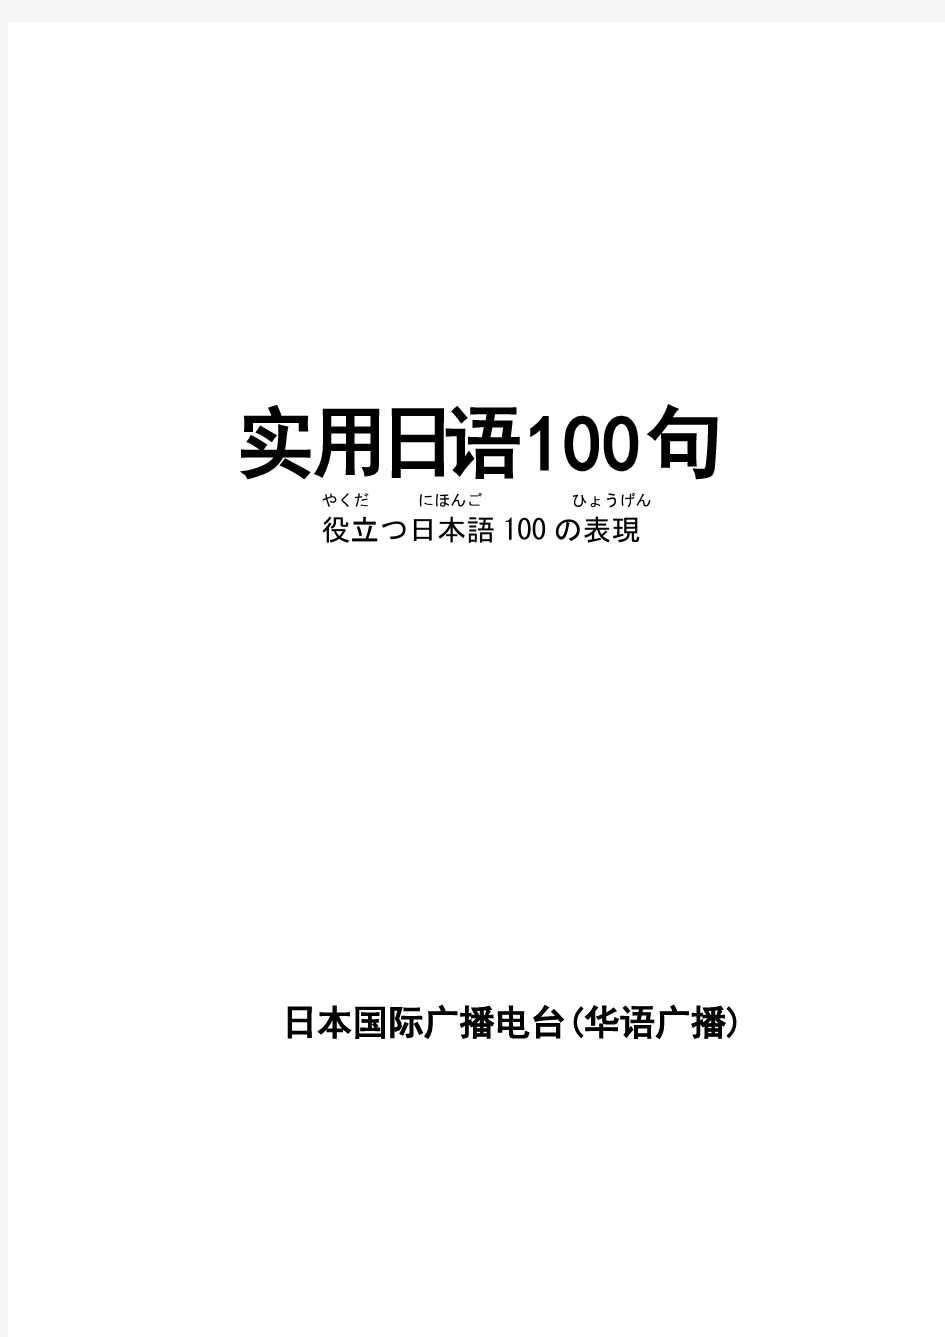 NHK实用日语100句(正篇)初到东京